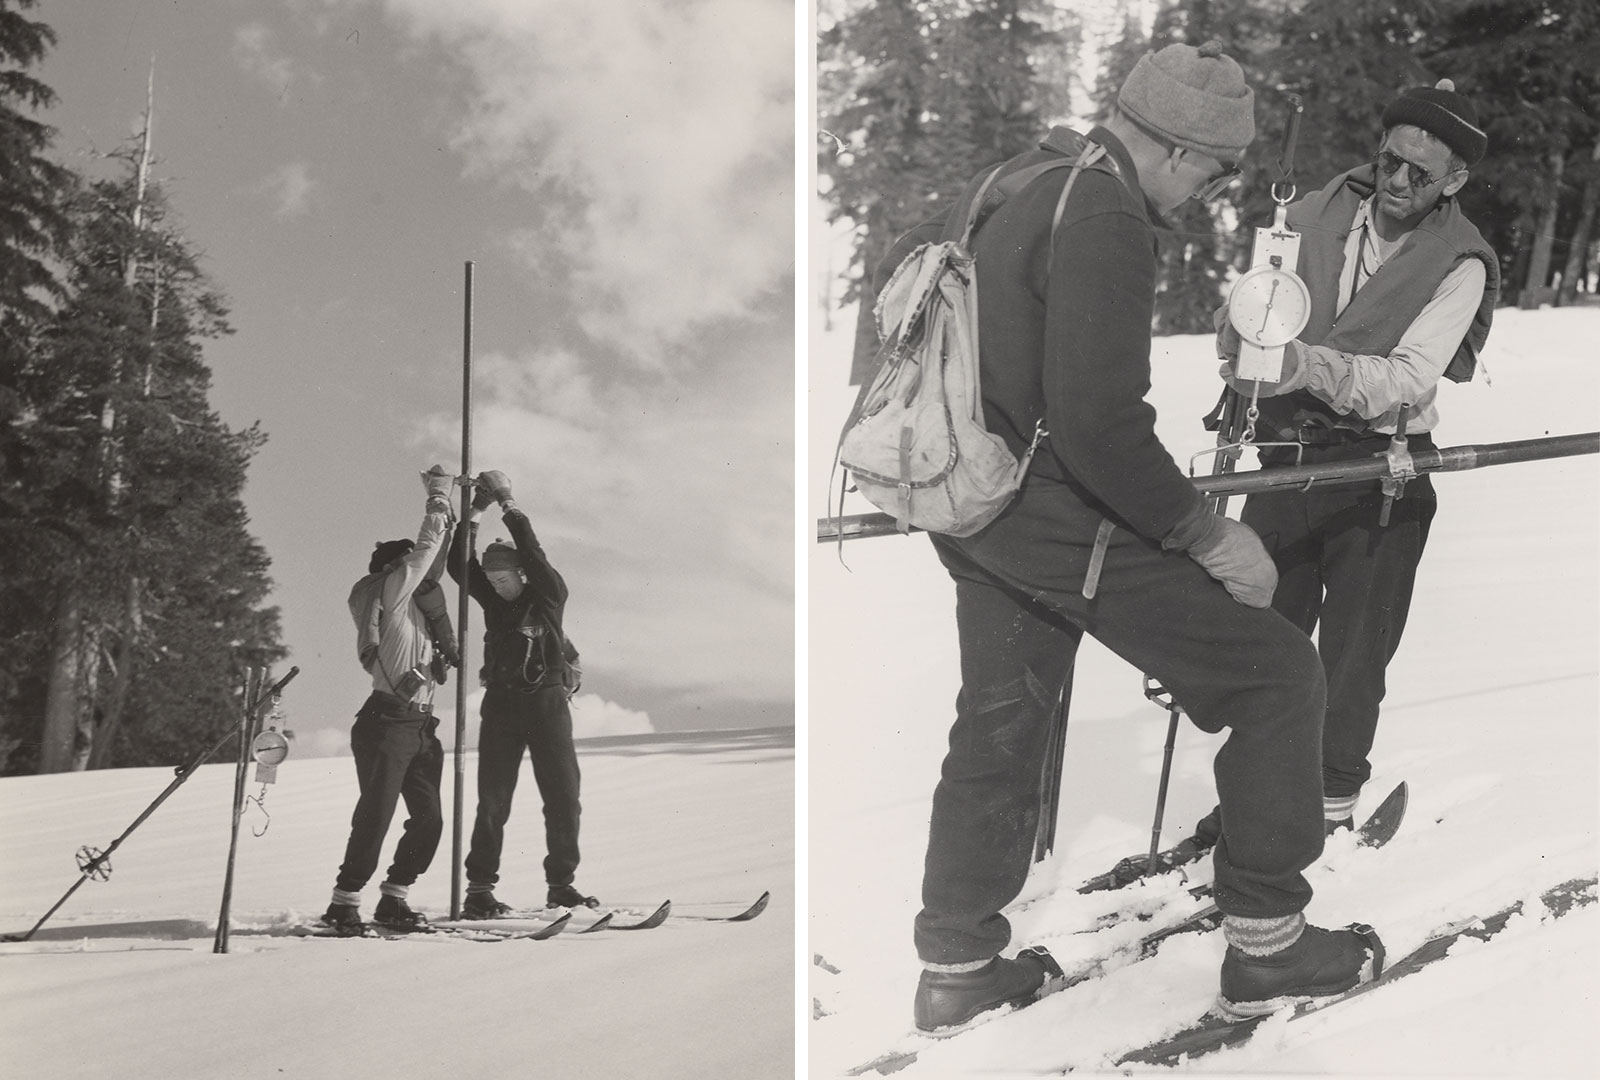 Left image: Mt. Rose snow sampler in action.; Right image: Snow sampler with snow core being weighed. 